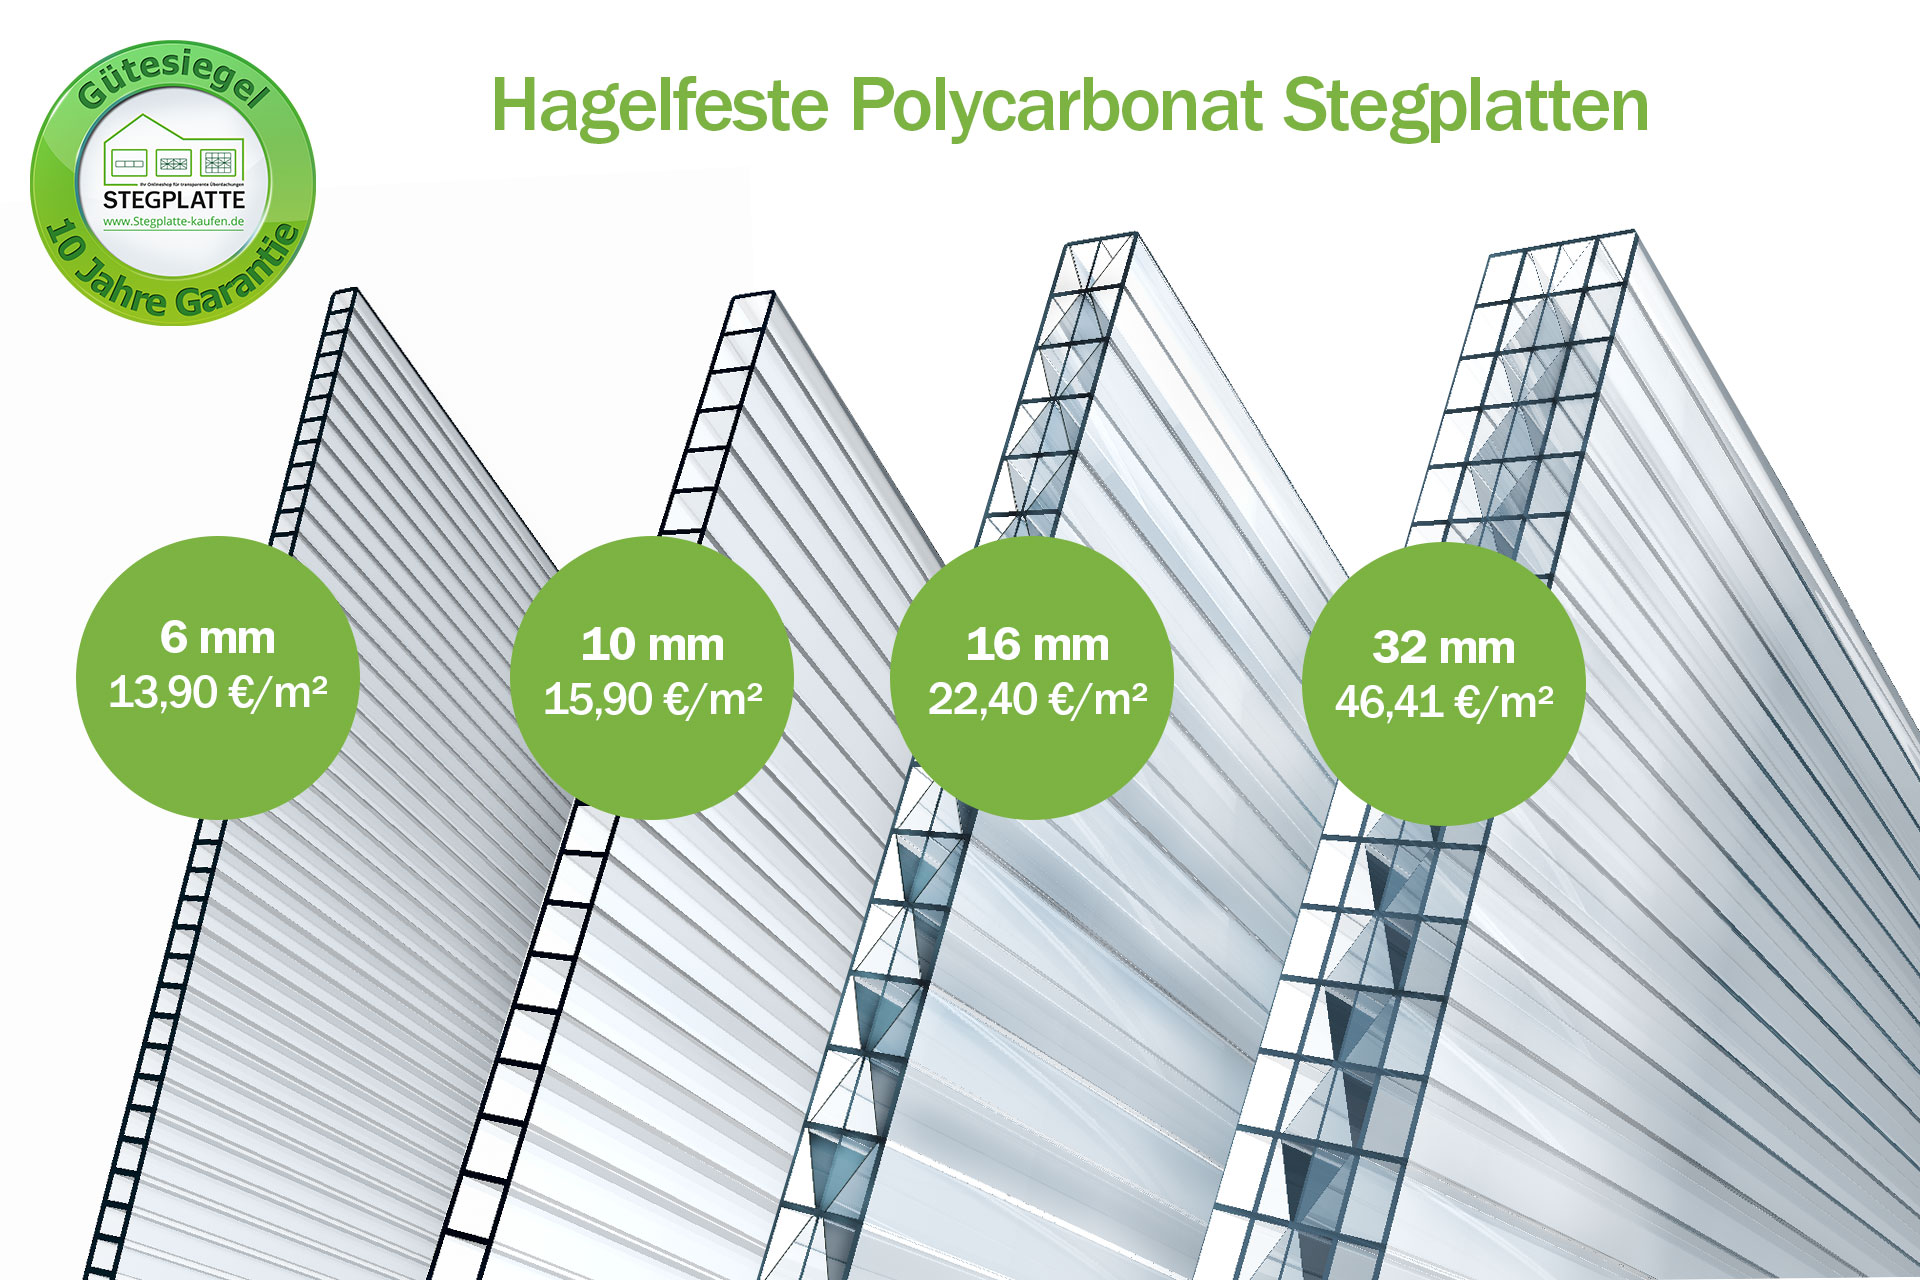 Preis Vergleich Polycarbonat Stegplatten